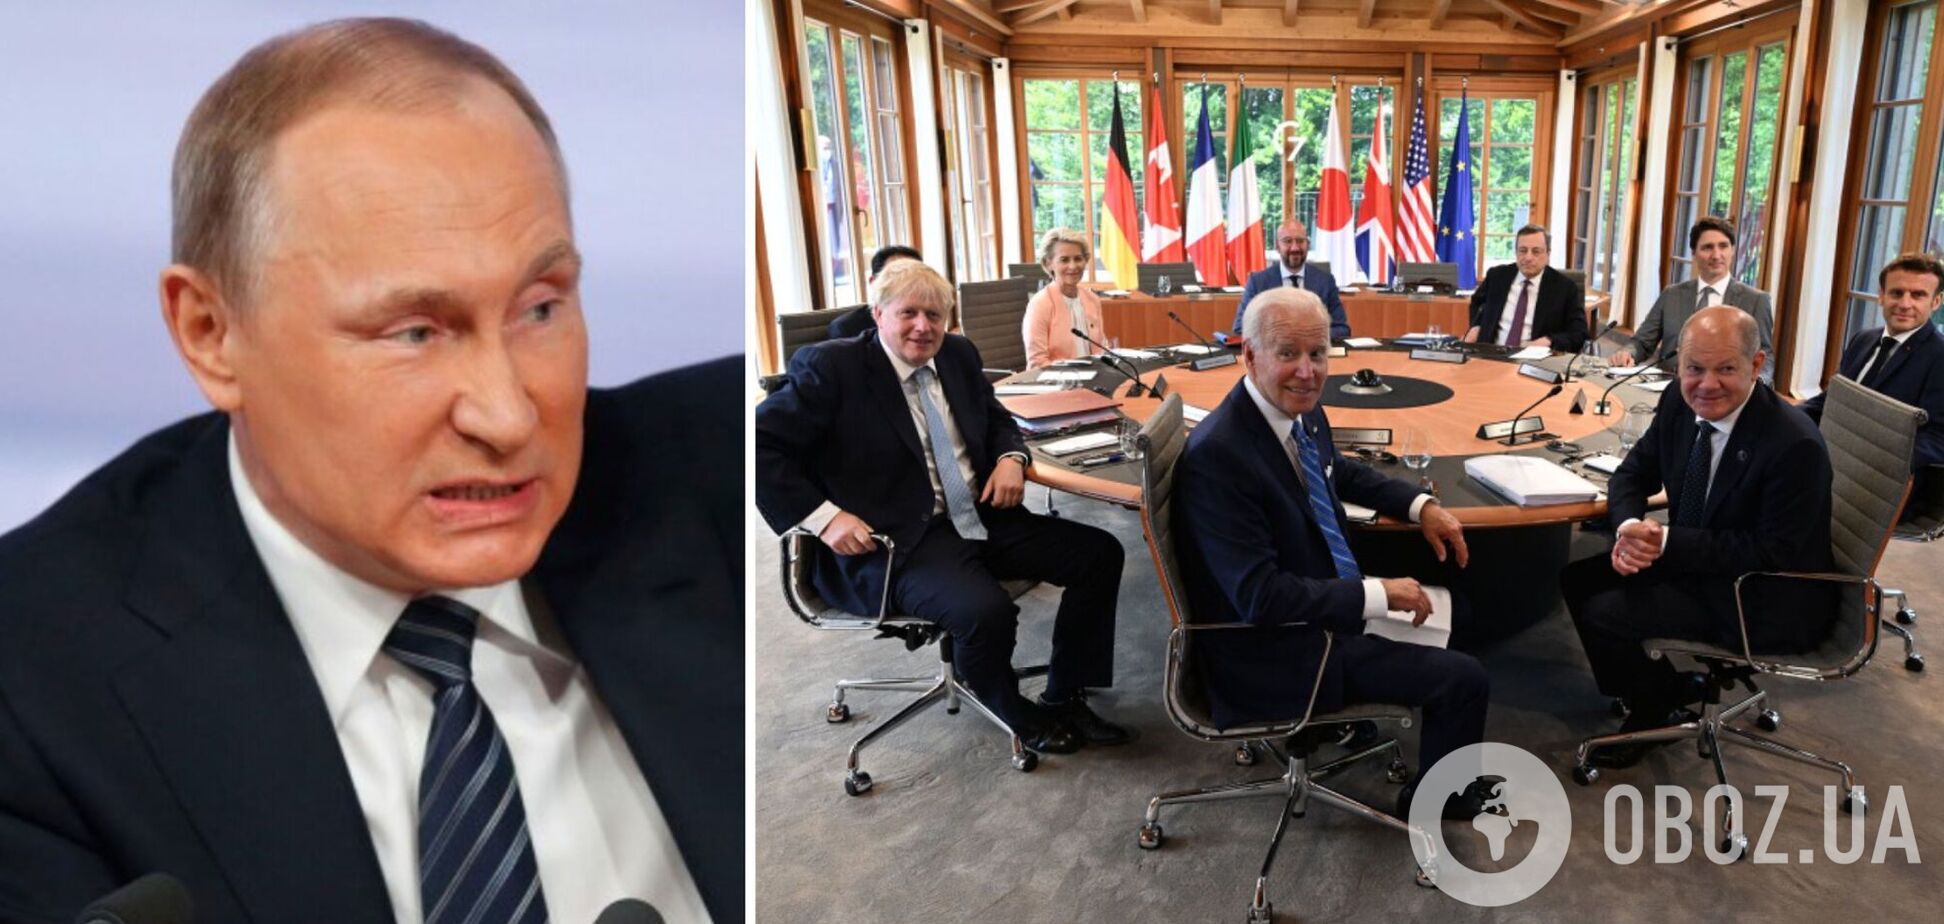 Два стола, два мира: появились фото с саммита G7 и саммита с участием Путина